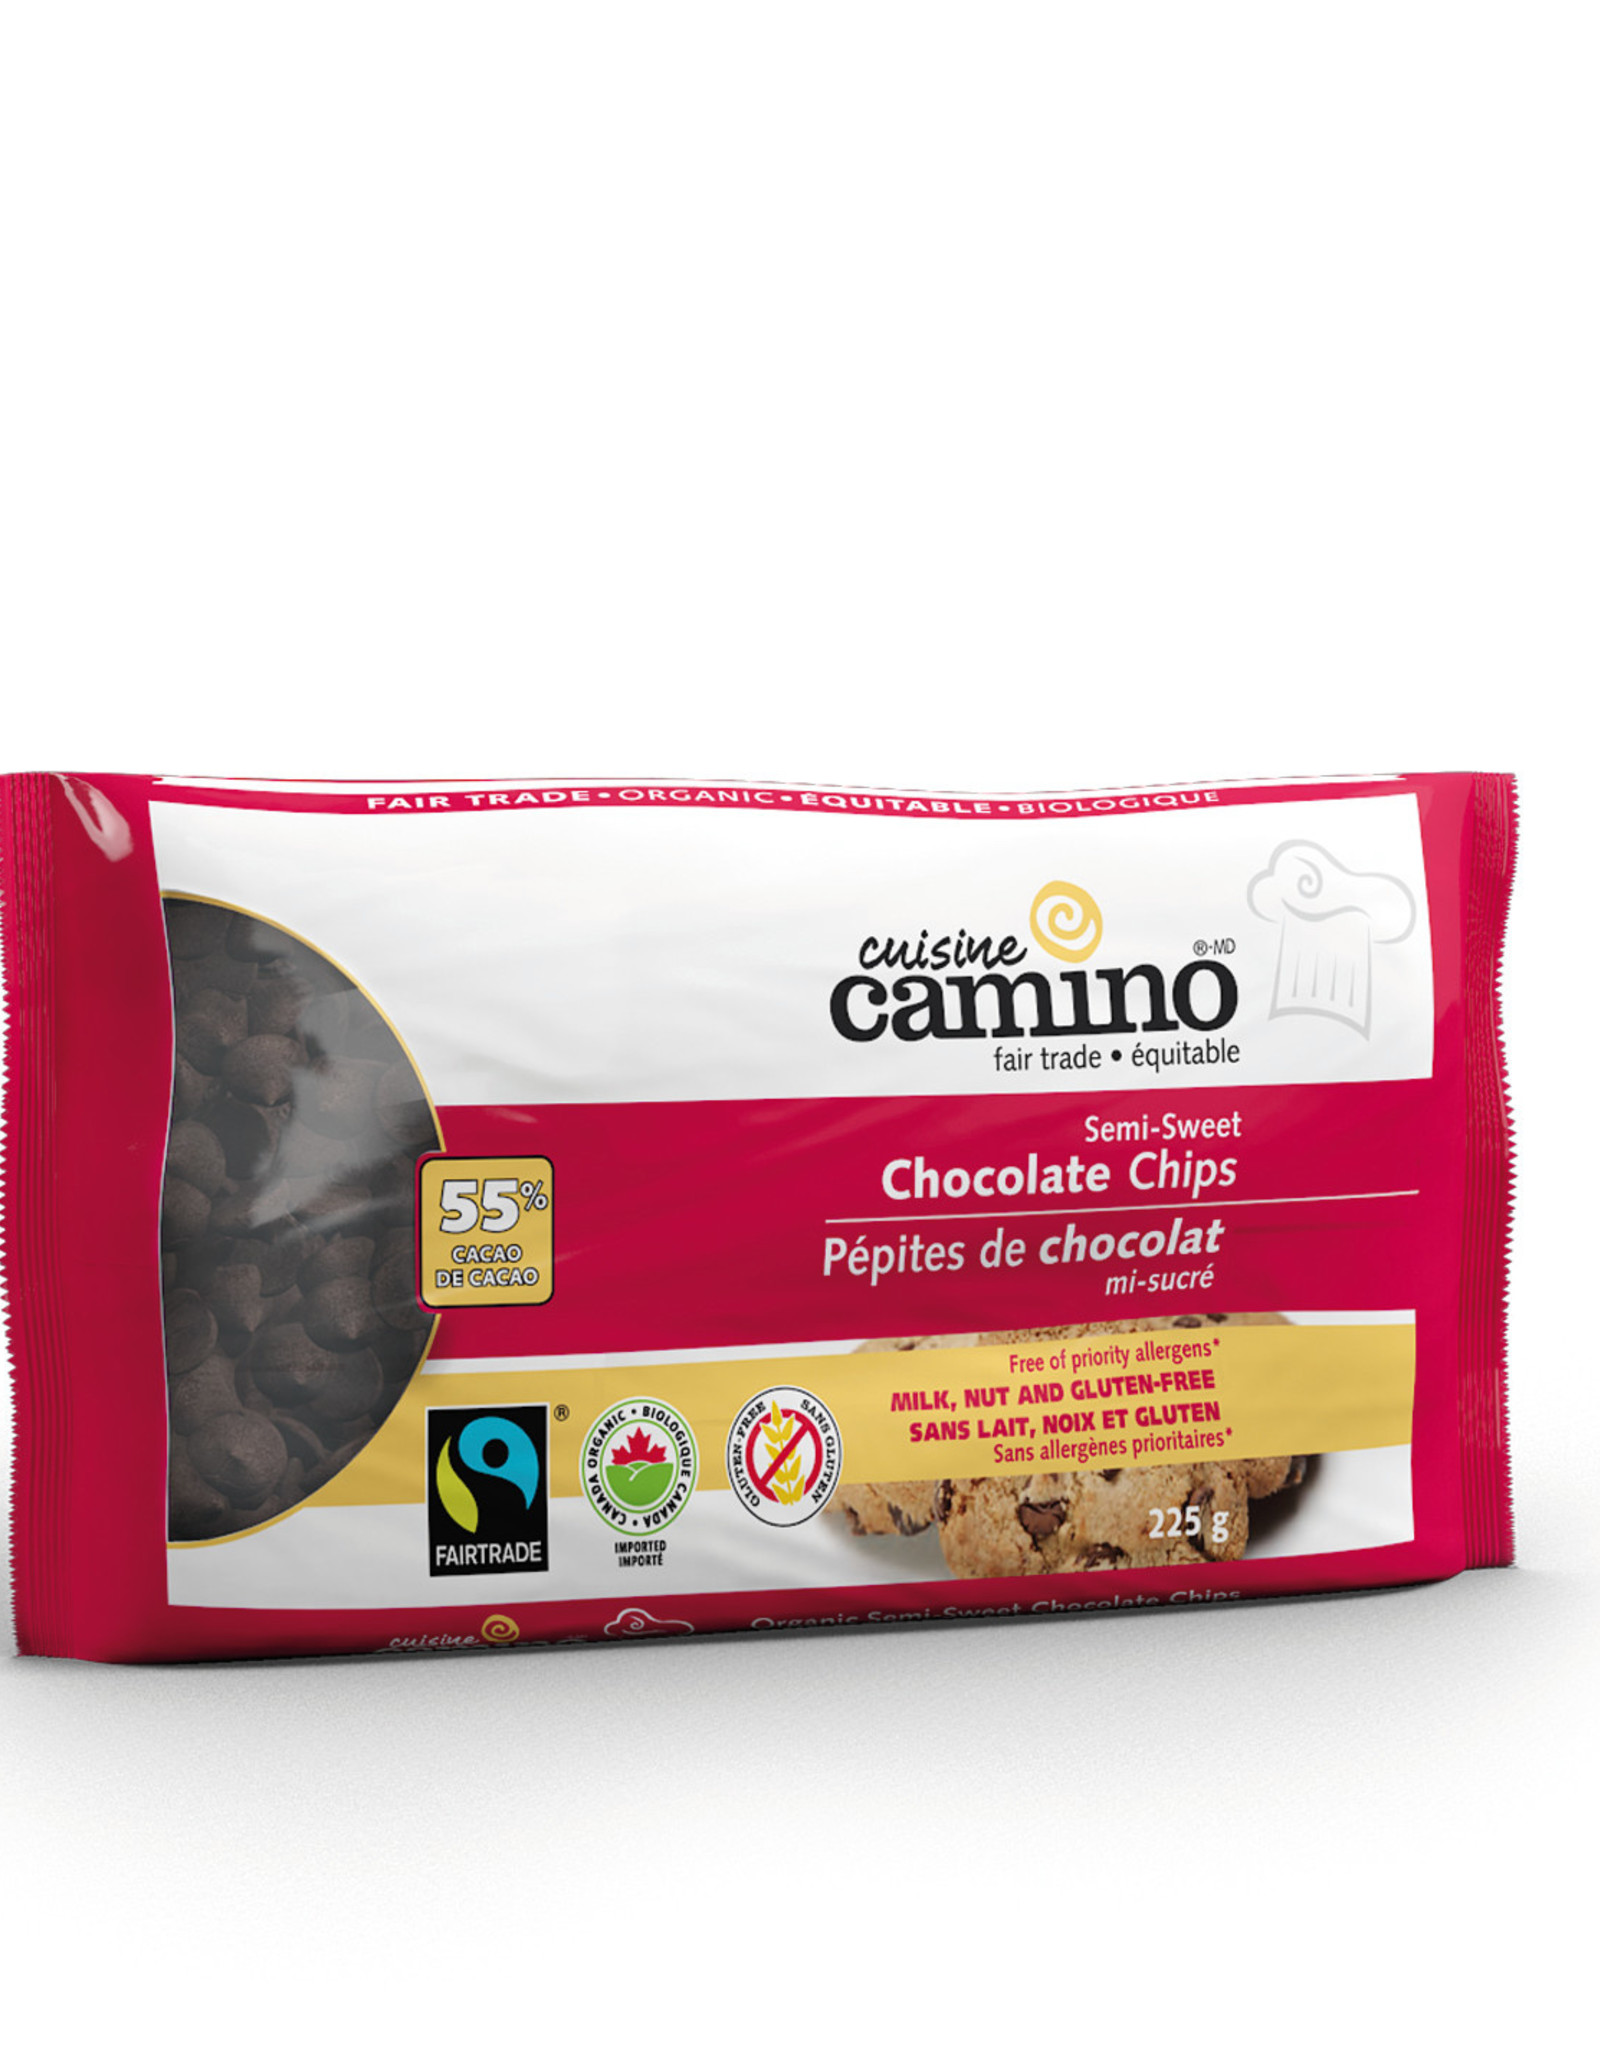 Peru Camino Semi-Sweet Organic Chocolate Chips 225g - Peru/Canada